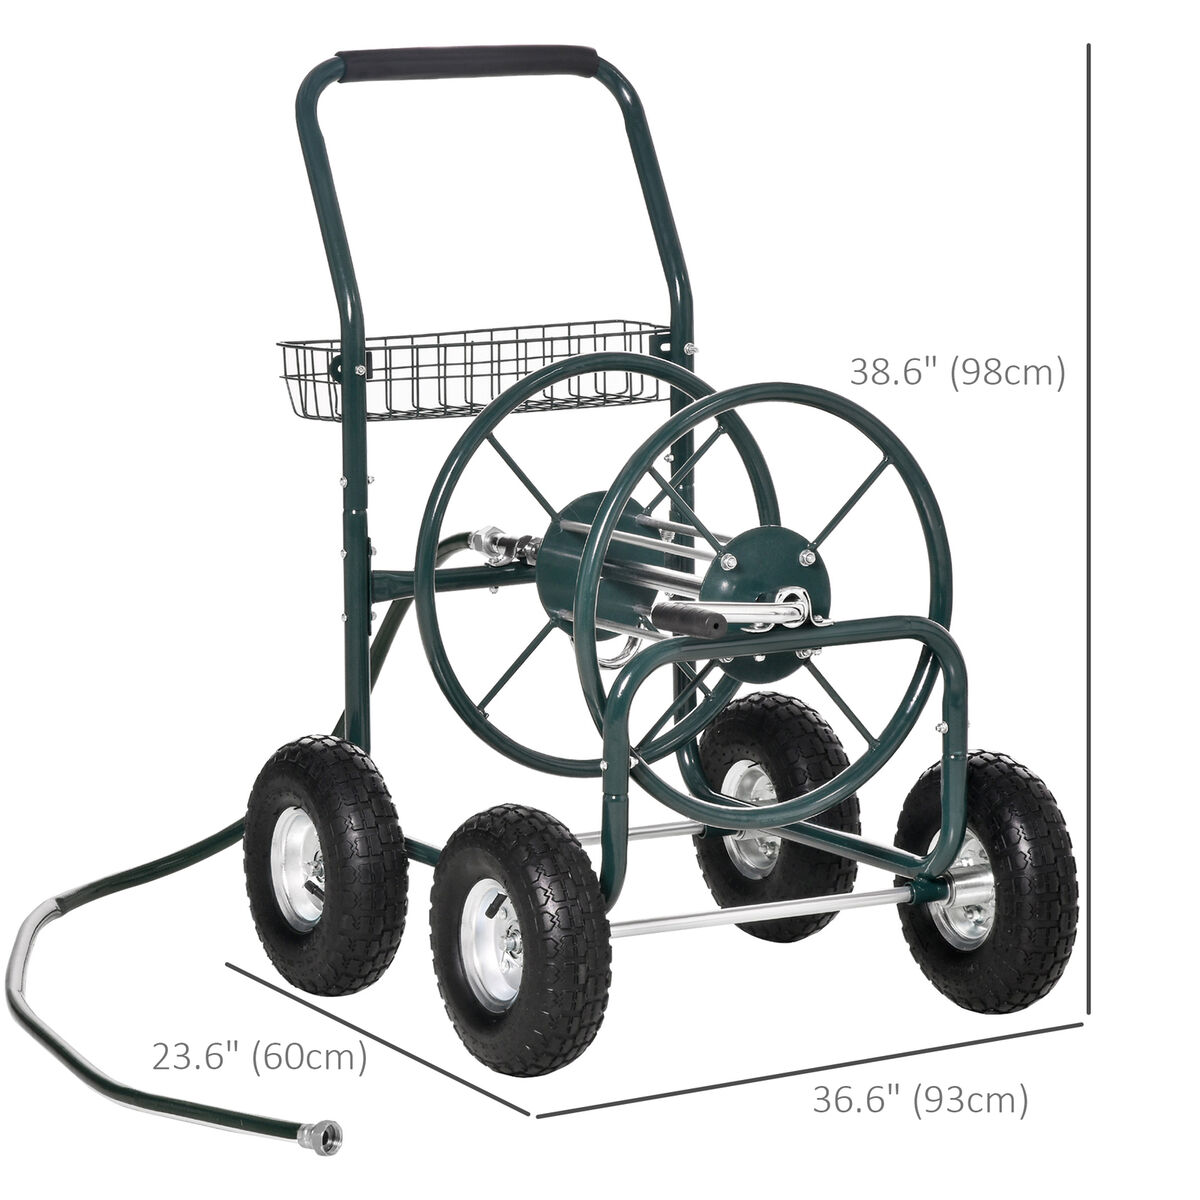 Outsunny Garden Hose Reel Cart, Portable Hose Organizer with Hose Guide System, 4 Wide Wheels & Storage Basket, Farm | Aosom Canada